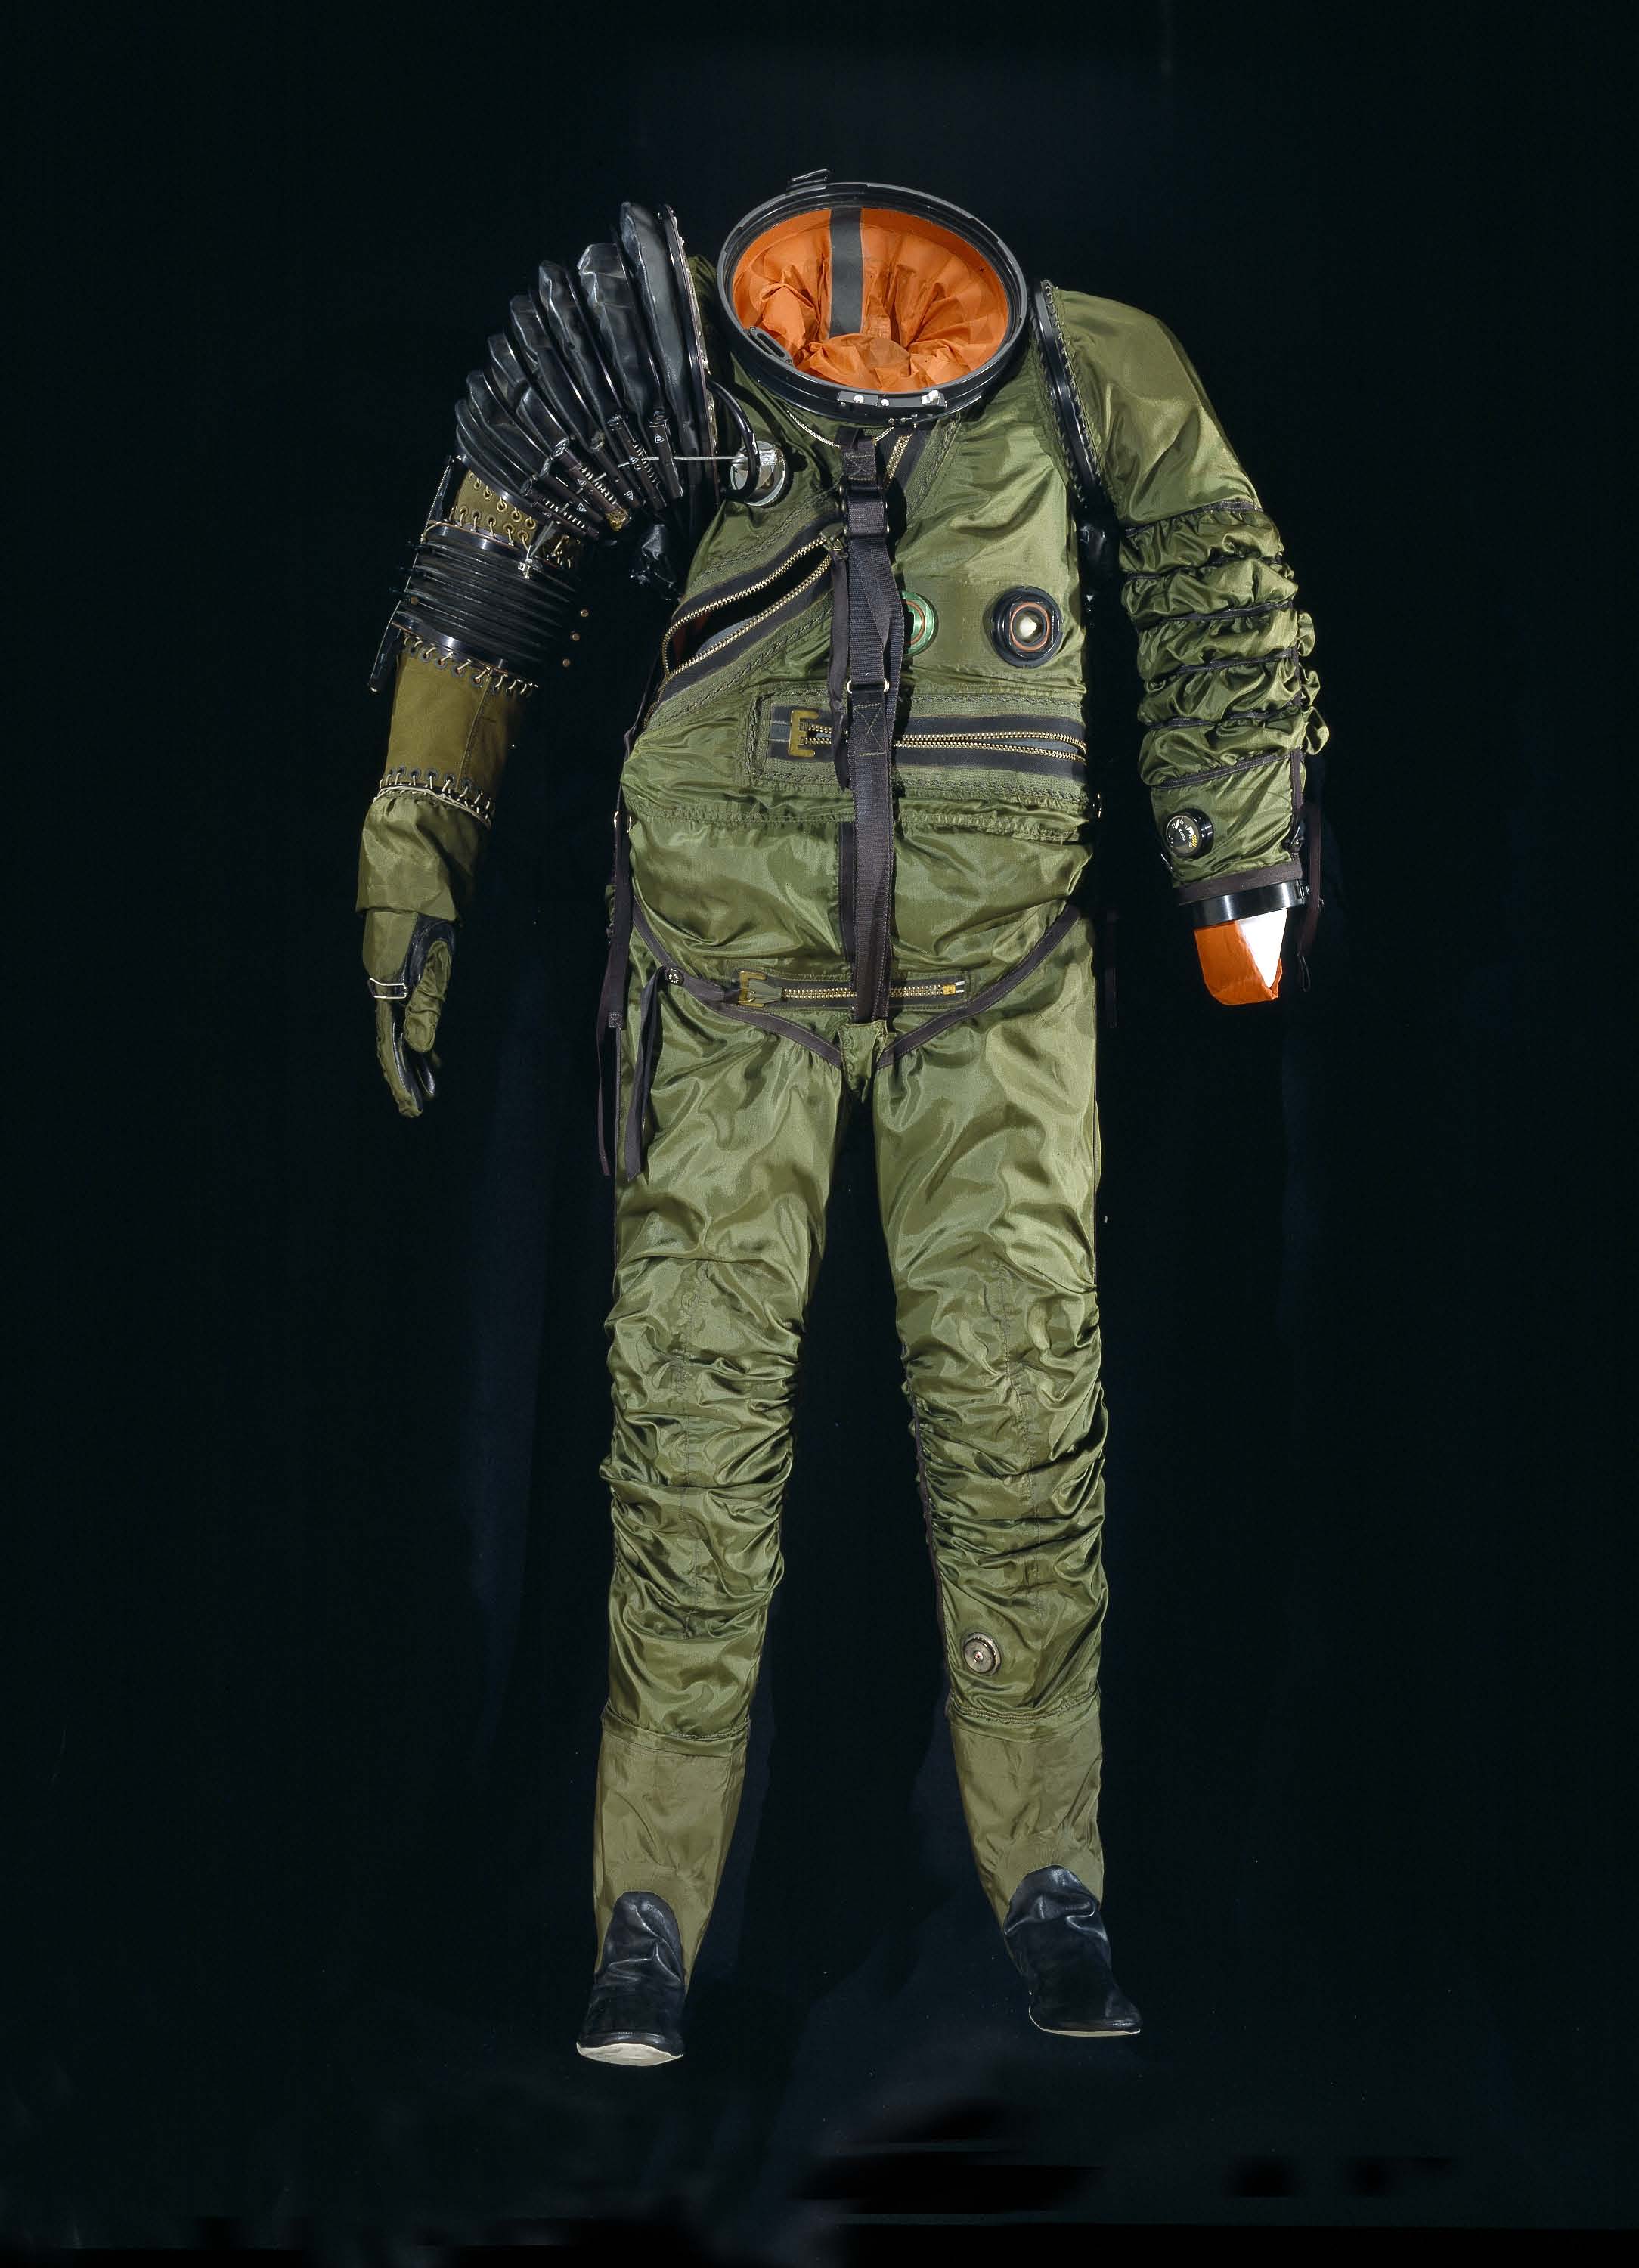 Гига скафандр мод 4. Космический костюм. Высотный костюм. Костюм под скафандр. Летный комбинезон Космонавта.